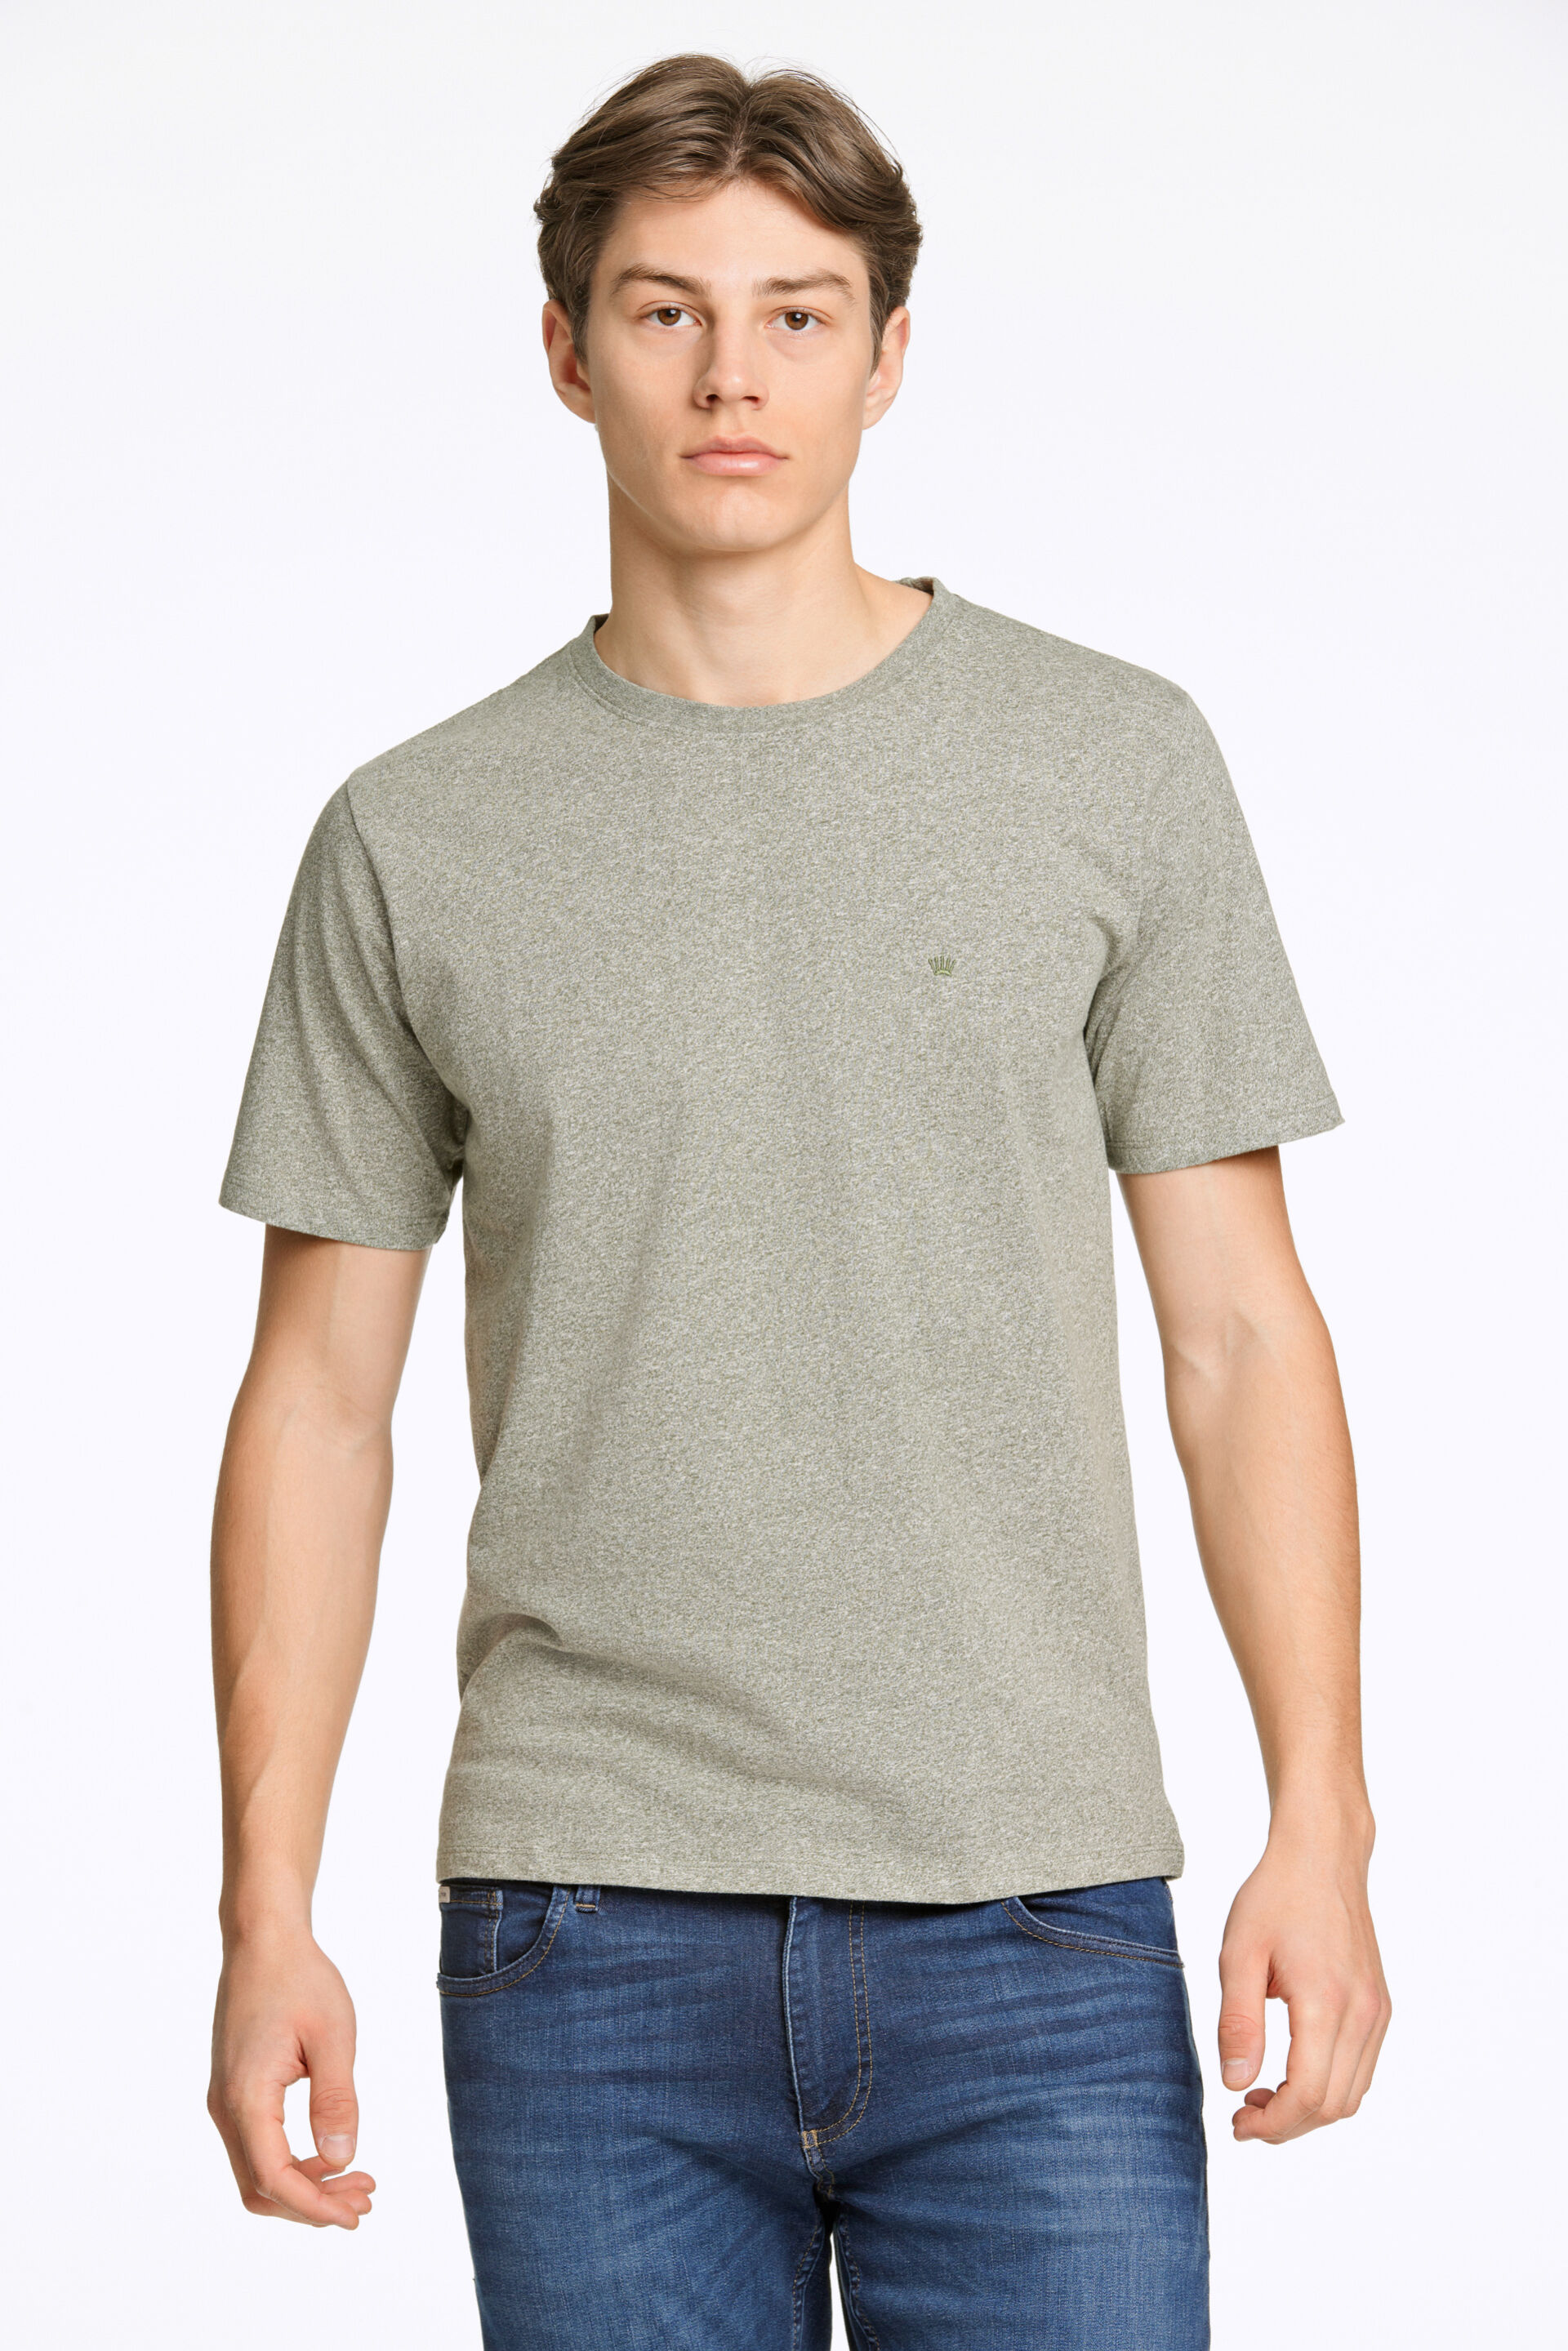 T-shirt T-shirt Grøn 60-455009